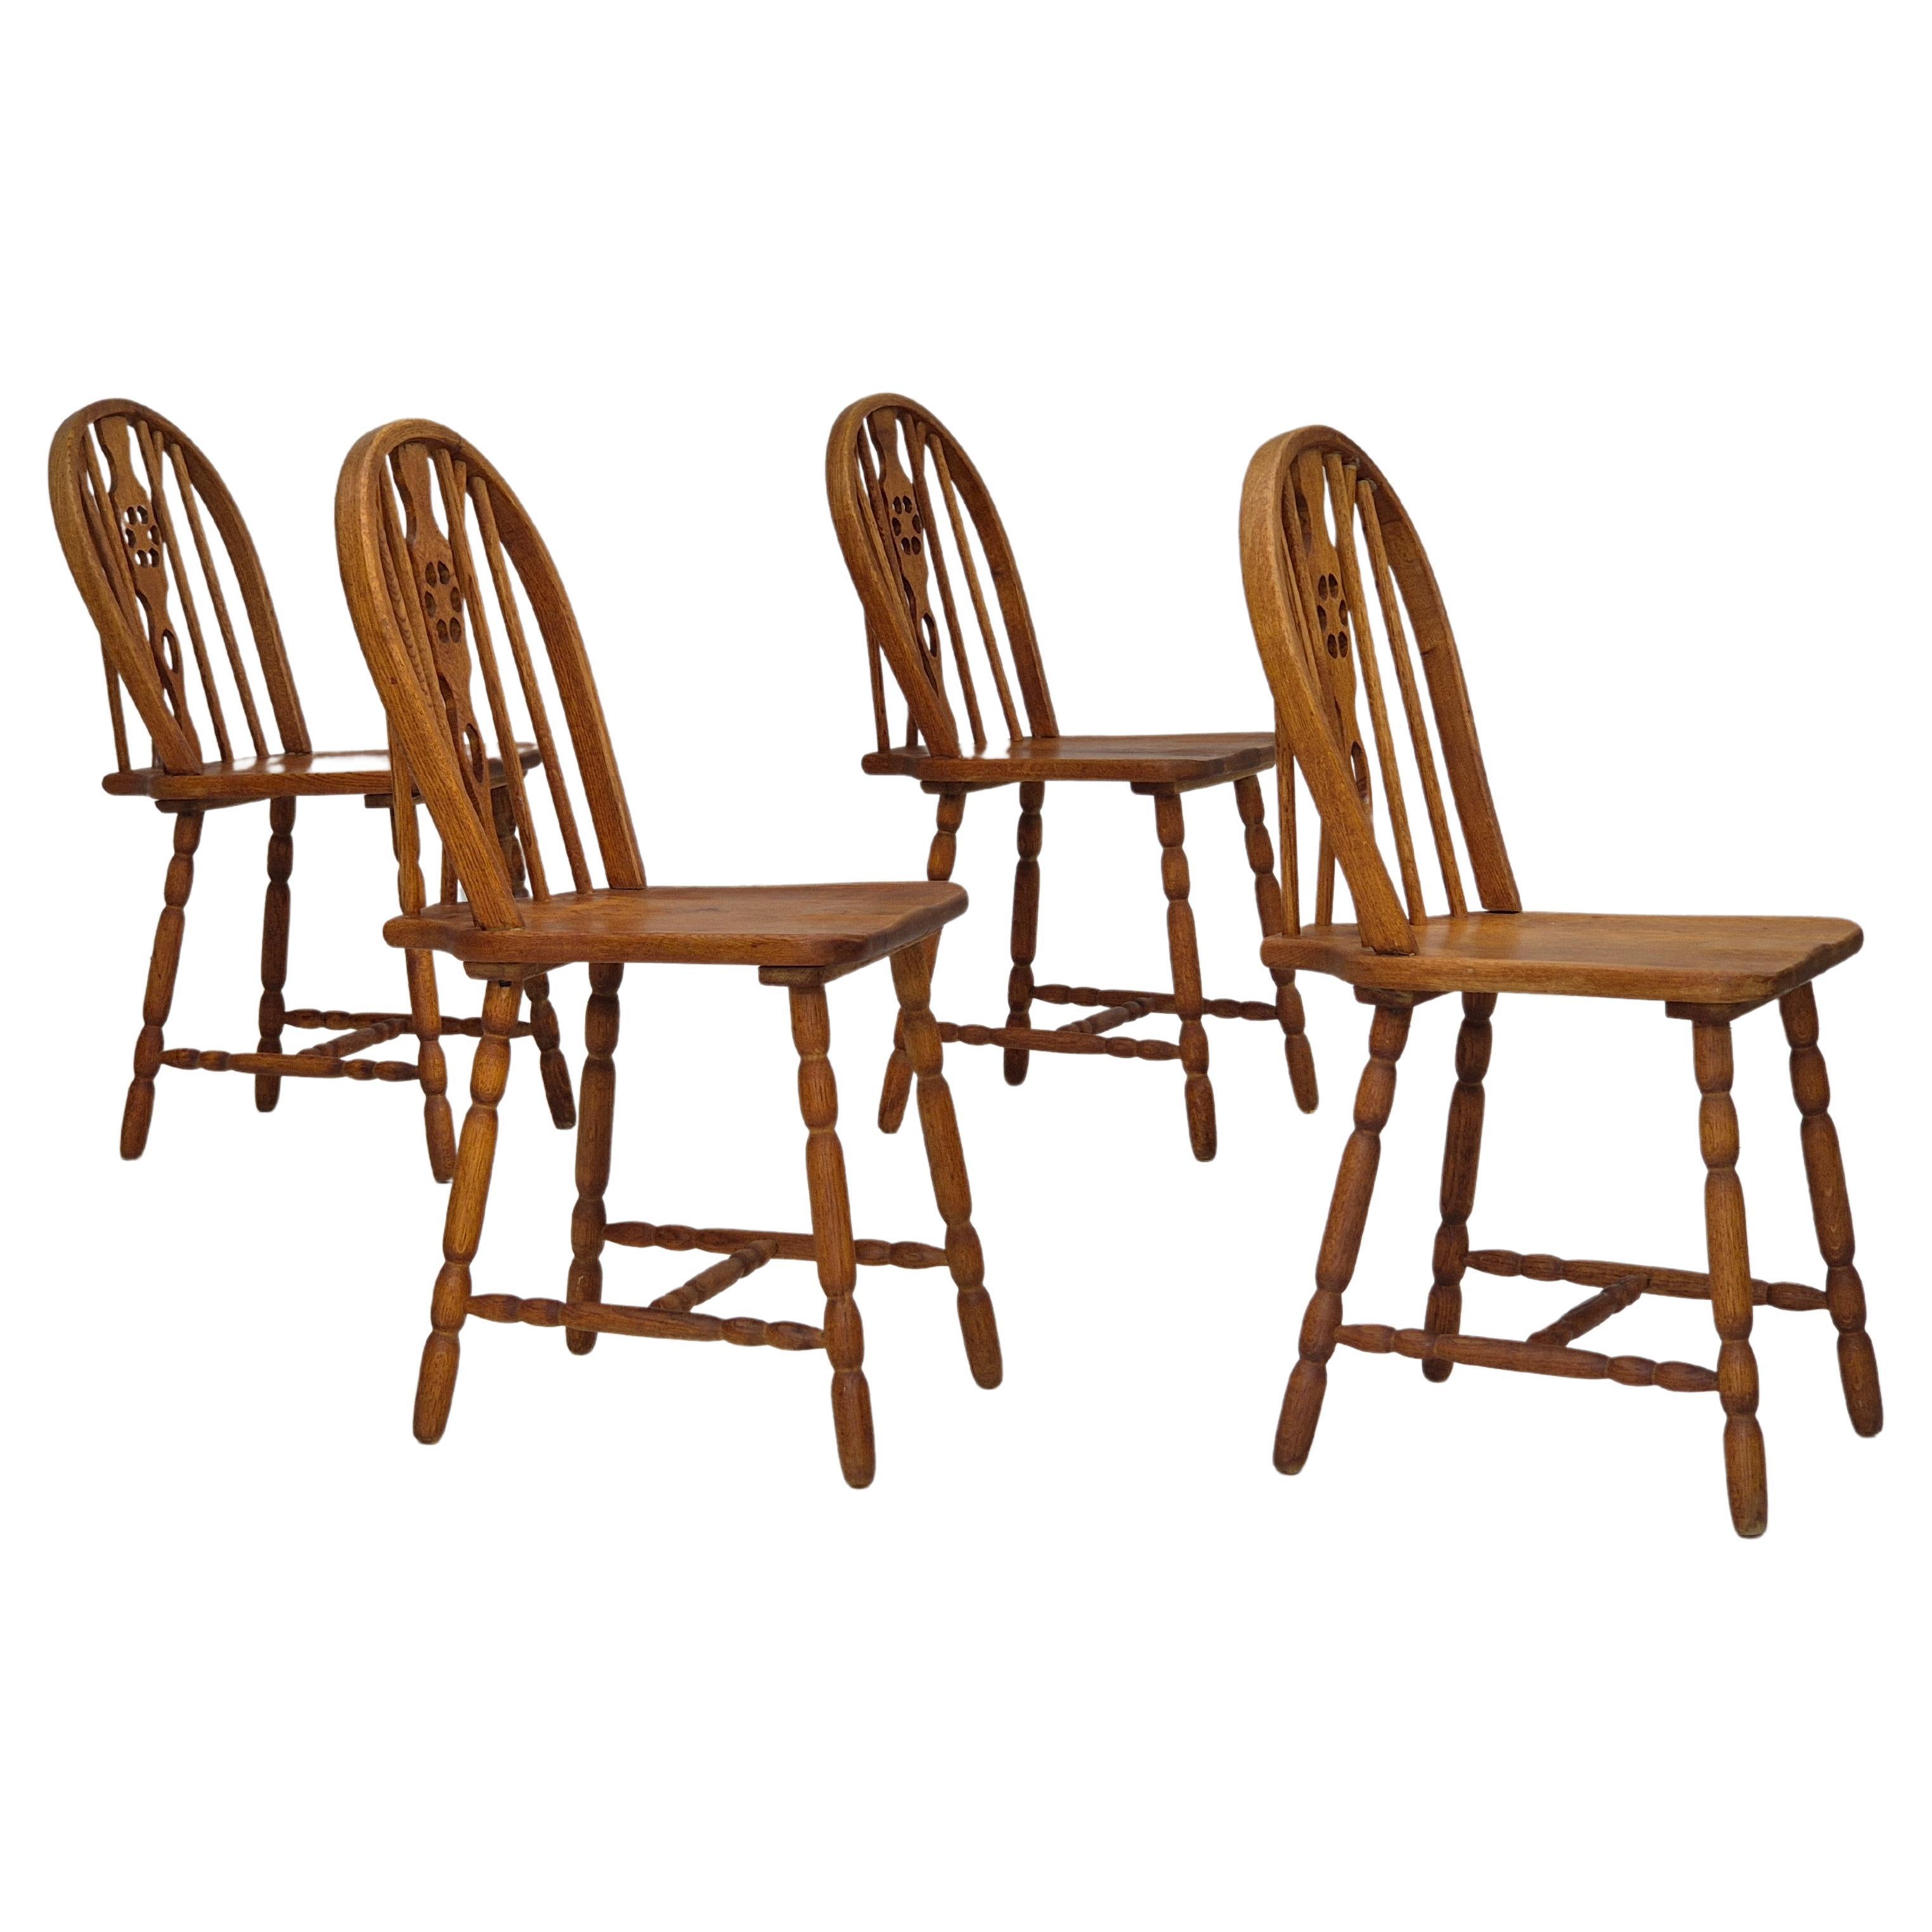 1960s, set de 4 chaises de salle à manger scandinaves en bois de chêne massif, original.